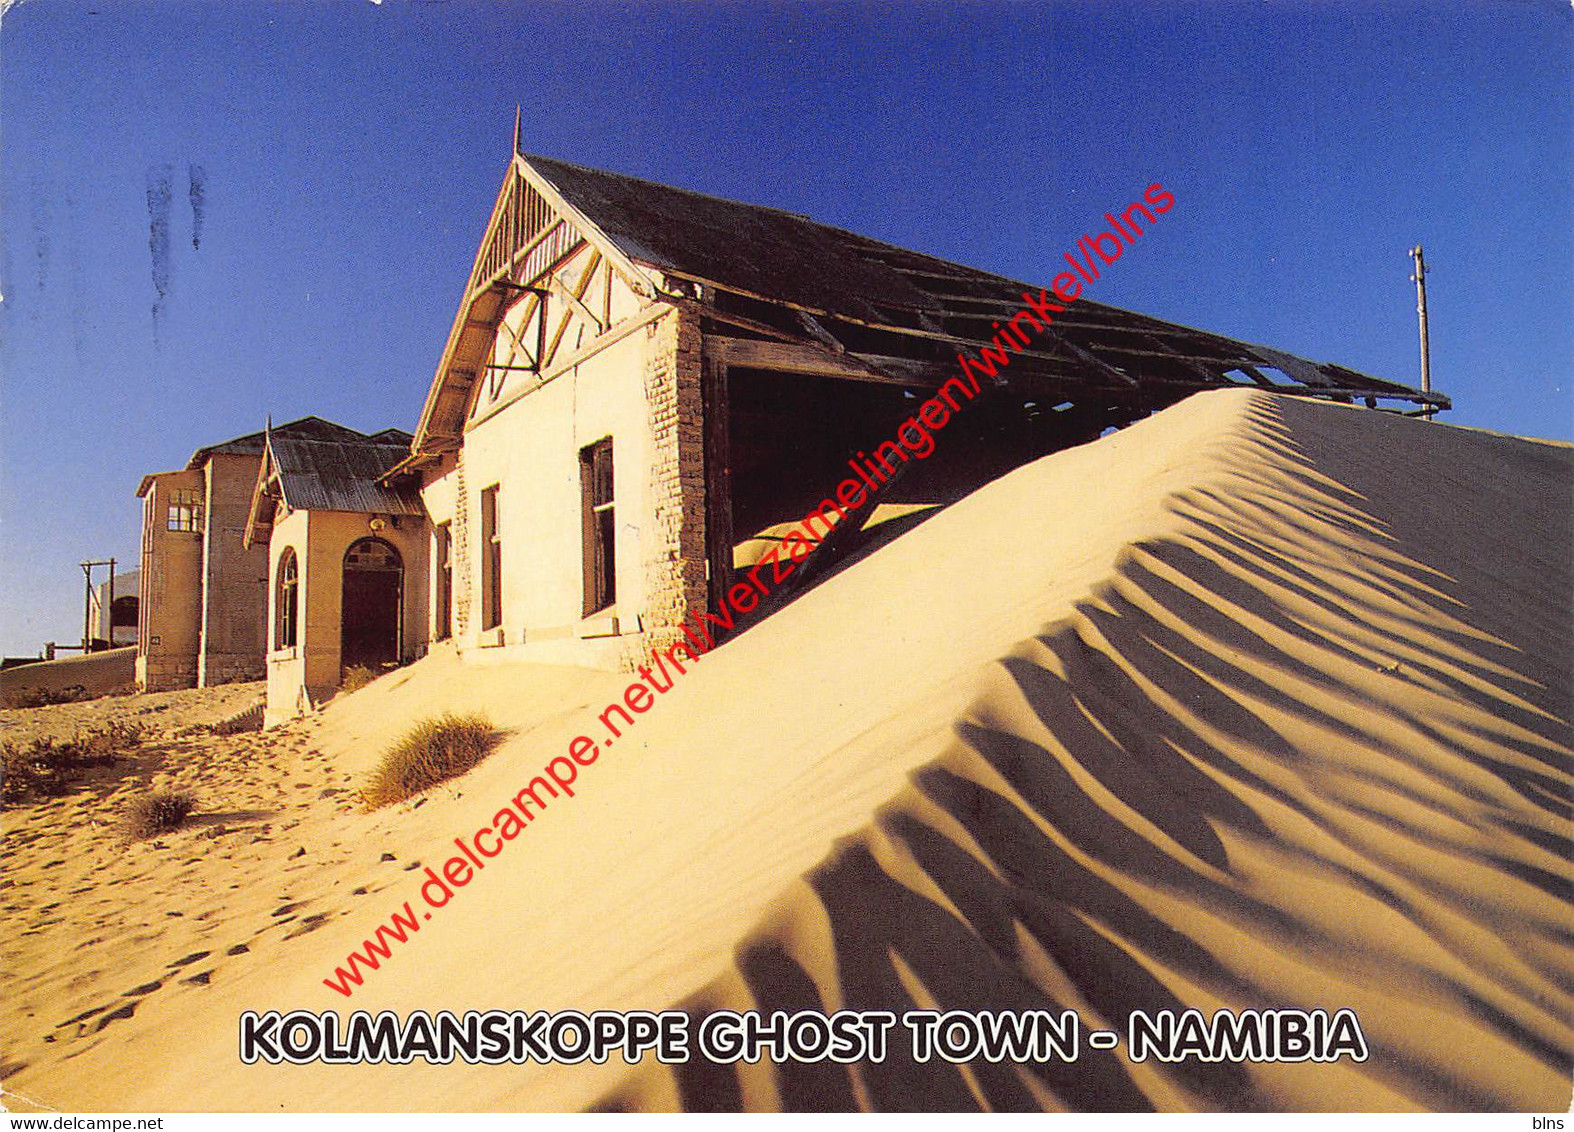 Namibia - Kolmanskoppe Ghost Town - Namibia